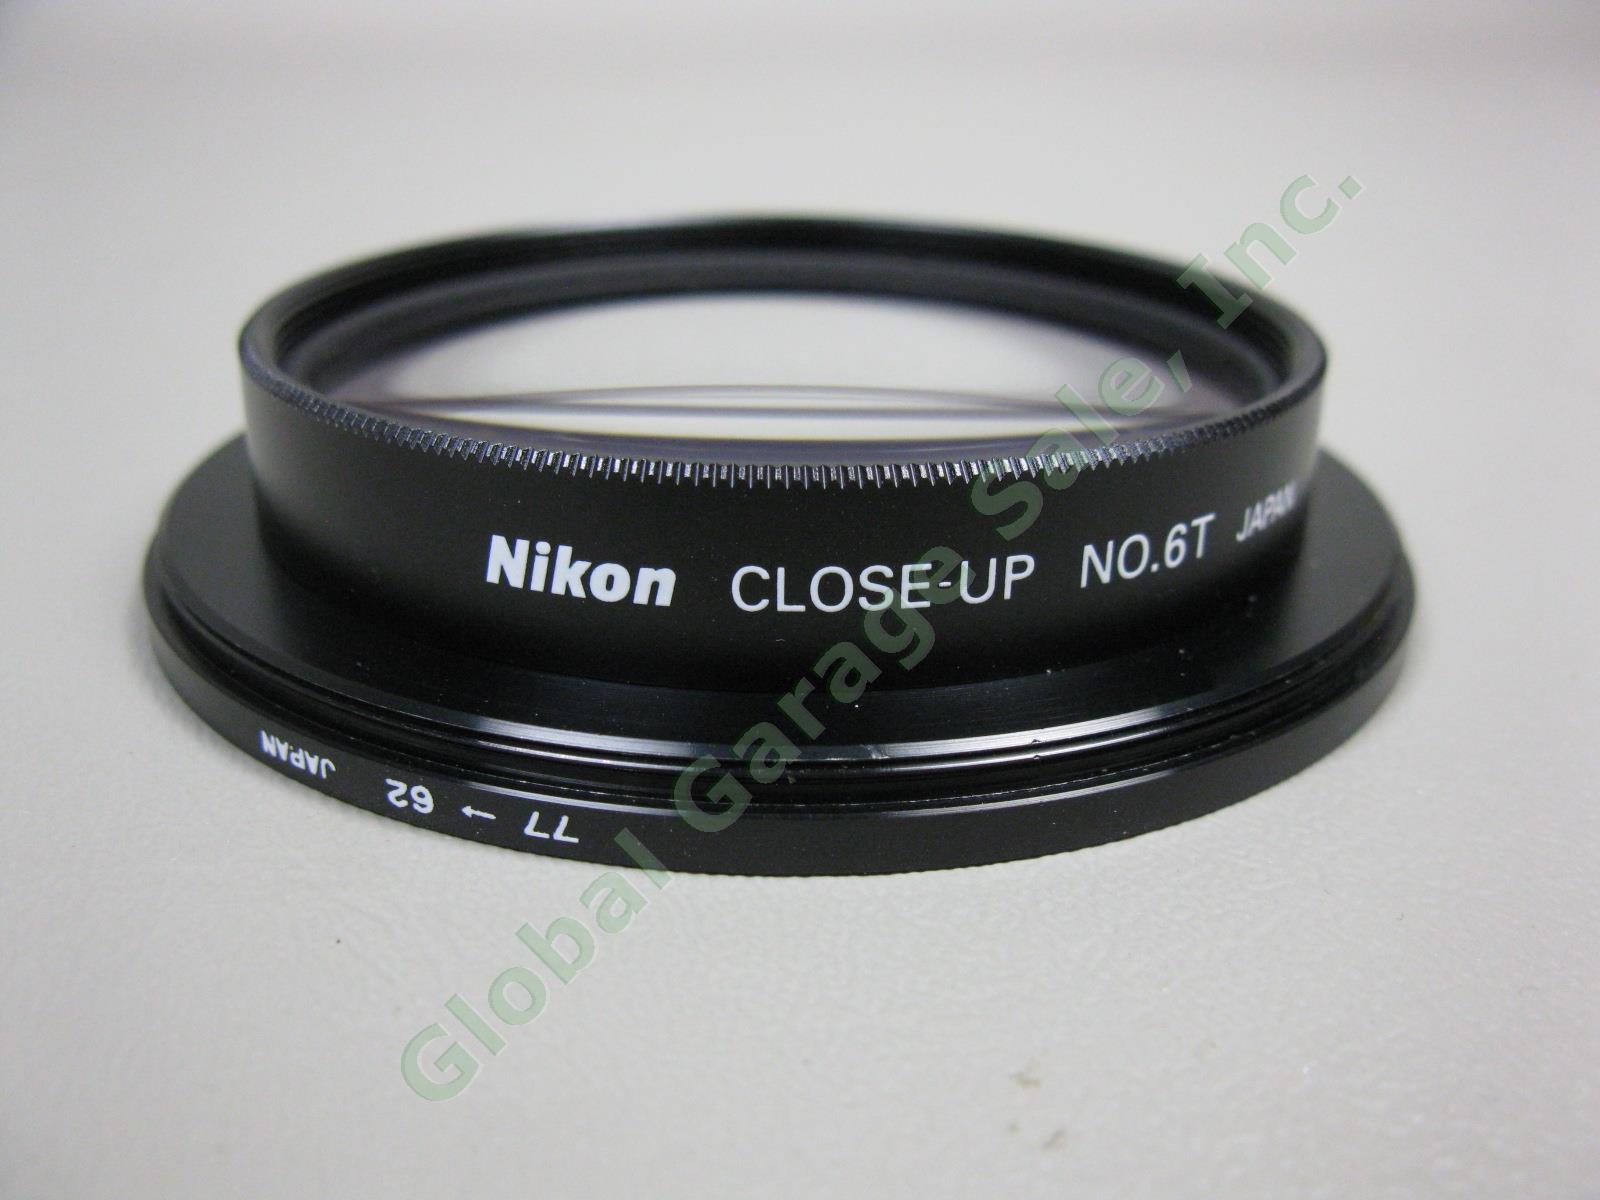 2 Nikon Macro Close-Up Attachment Lens Lot No 5T + 6T + Case 77 62 Filter Bundle 1